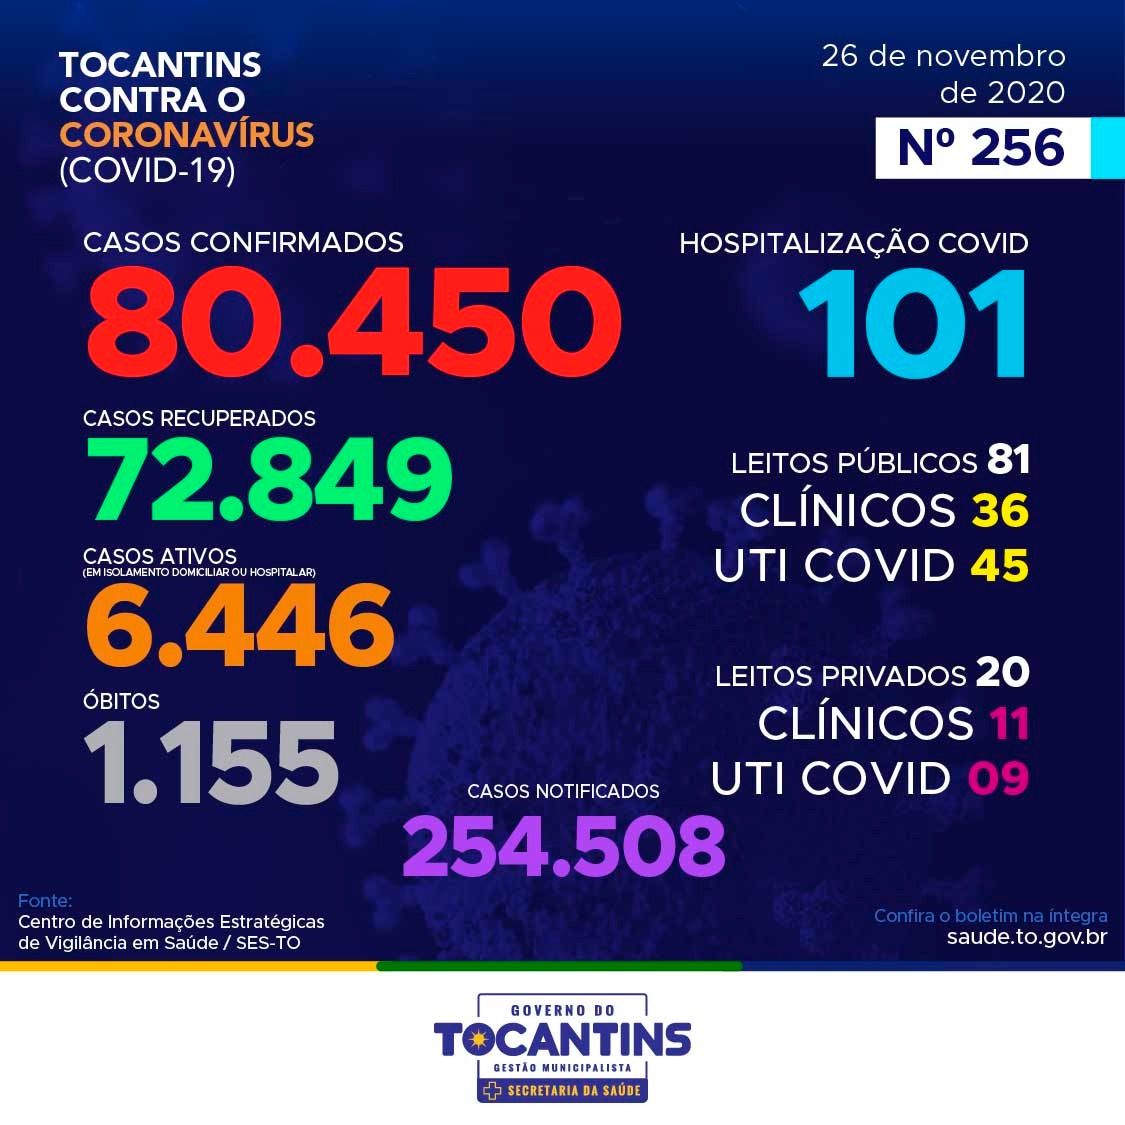 Coronavírus: Tocantins confirma 241 novos casos hoje, destes, 44% está entre indivíduos de 20 a 39 anos